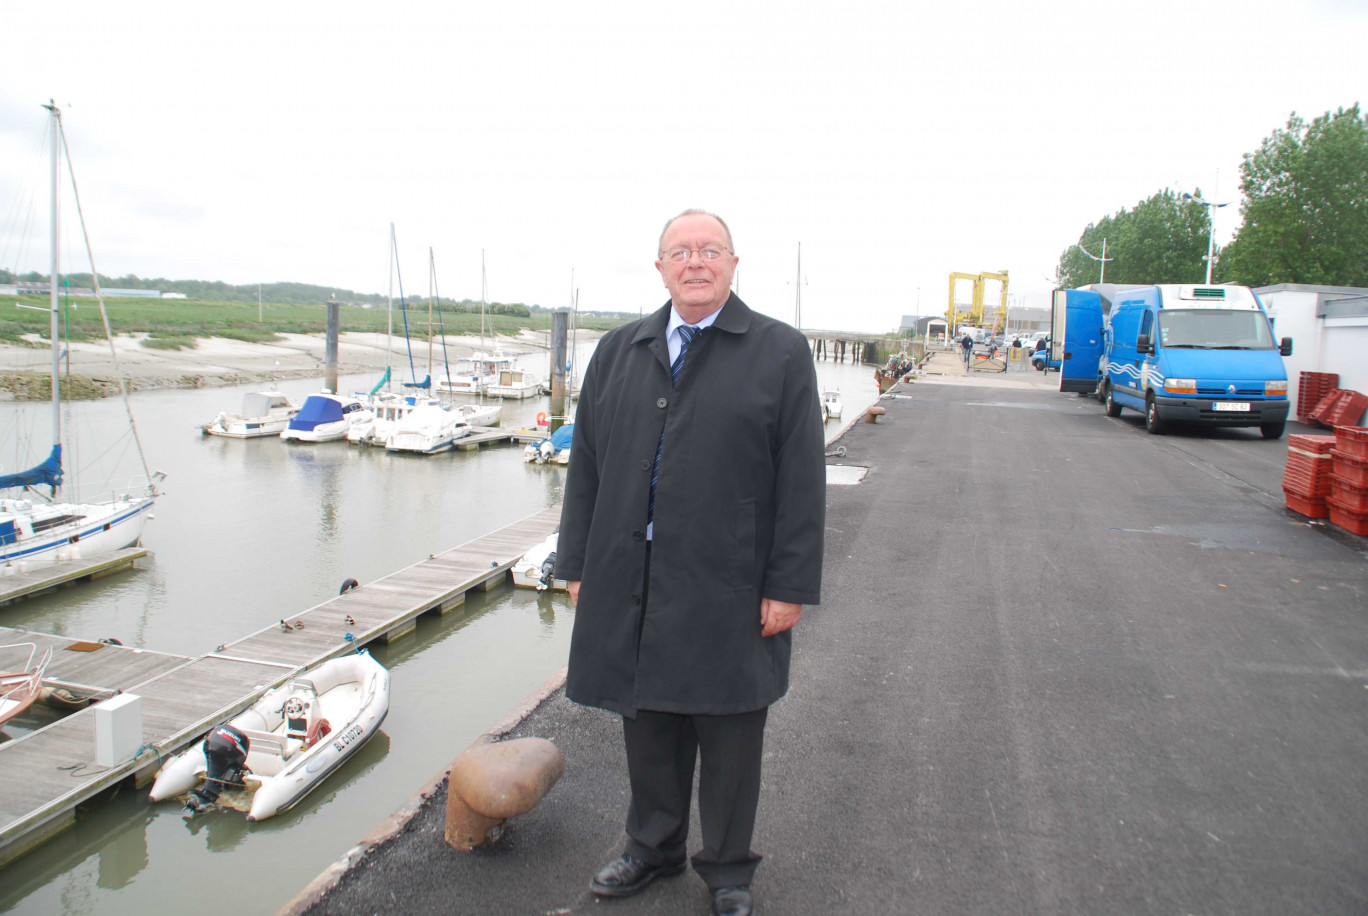 Vice-président du département du Pas-de-Calais en charge de l’agriculture et de la pêche, Claude Allan est aussi président du conseil consultatif du port d’Étaples.